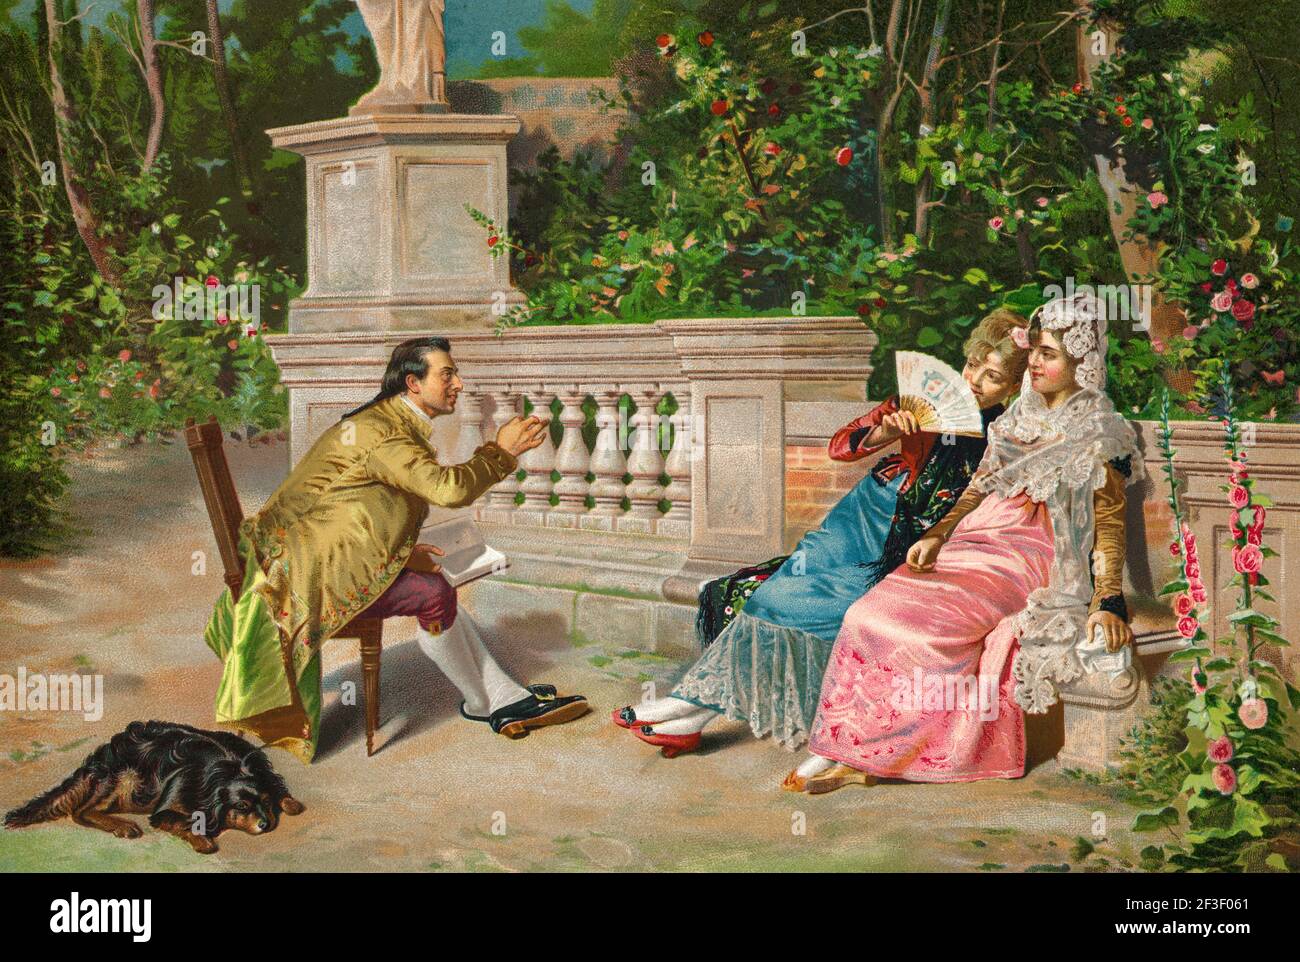 Un homme baiser et lire un livre à deux femmes vêtues de costumes traditionnels du XIXe siècle dans un jardin. Illustration de la lithographie de couleur de l'ancien XIXe siècle d'El Mundo Ilustrado 1879 Banque D'Images